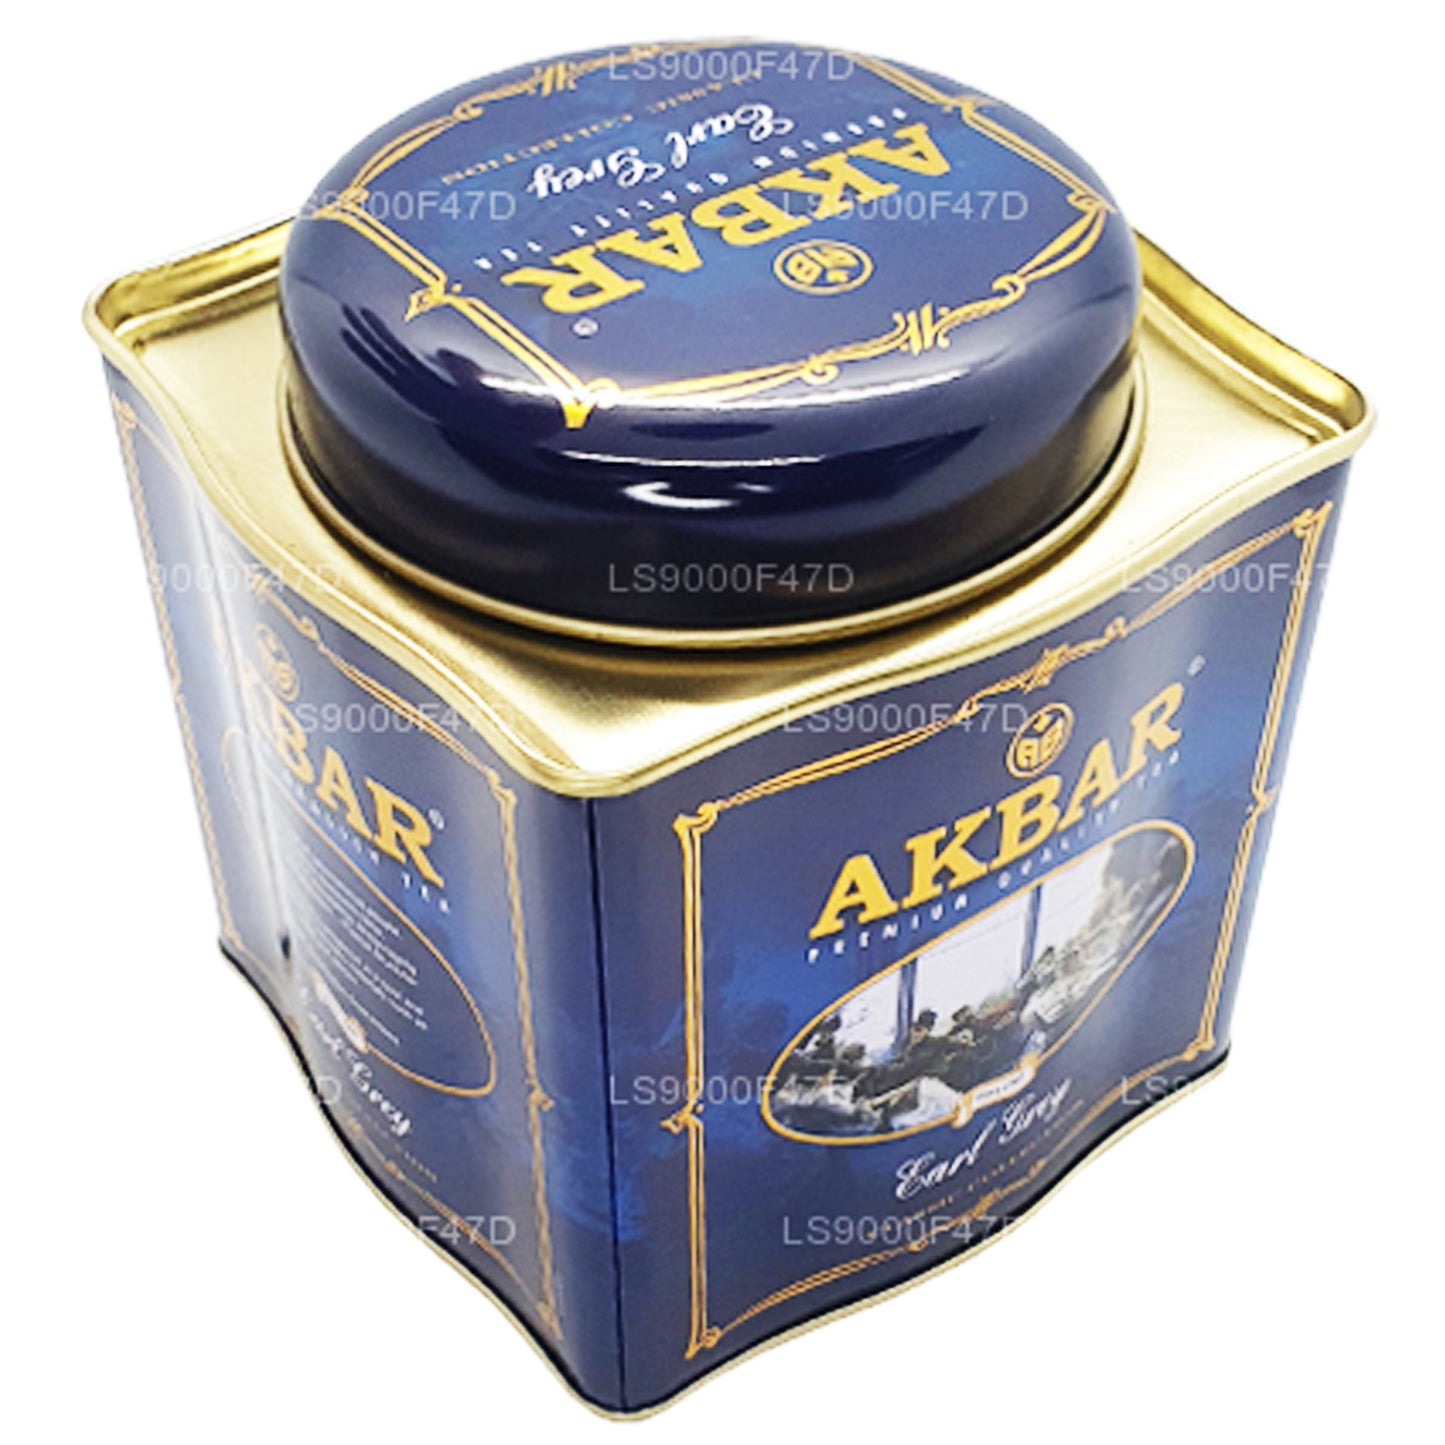 Tè Akbar Classic Earl Grey Leaf (250 g) in latta